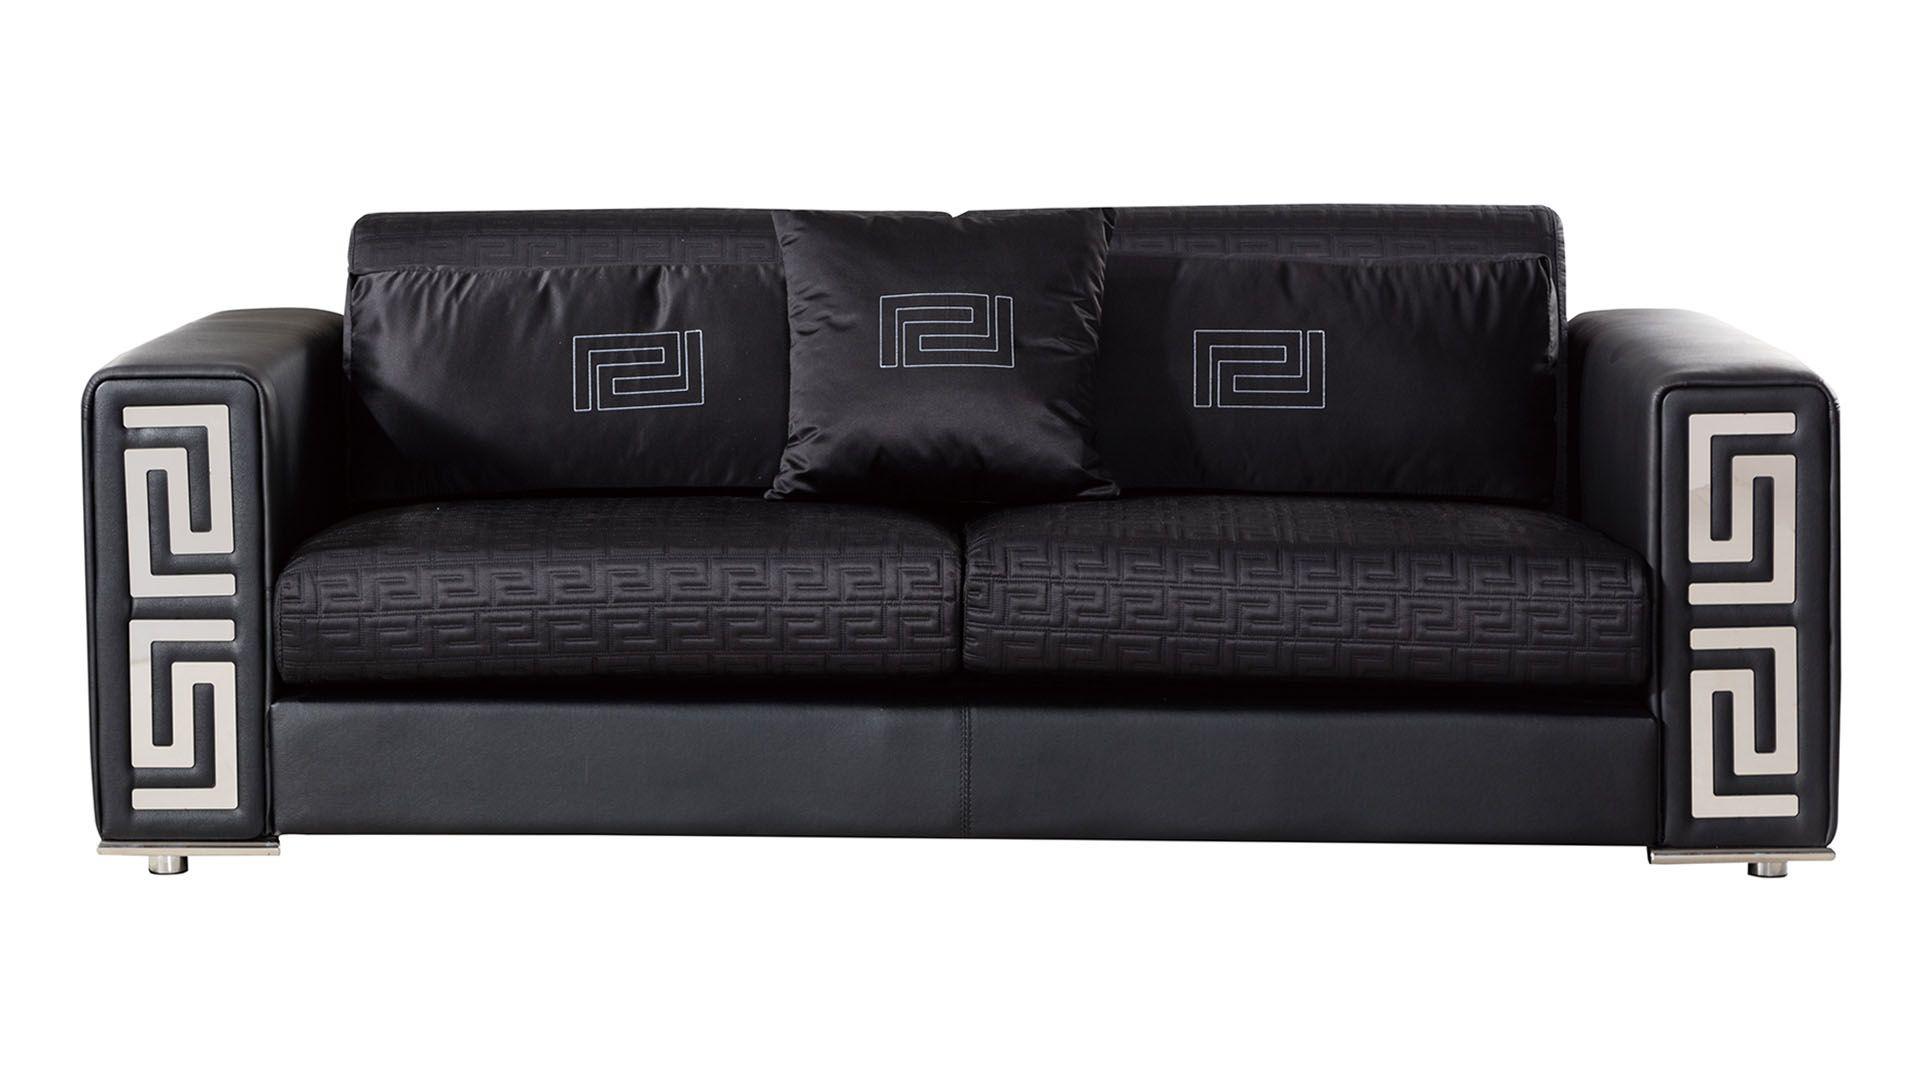 

    
American Eagle Furniture AE223-BK Sofa Set Black AE223-BK-2PC
